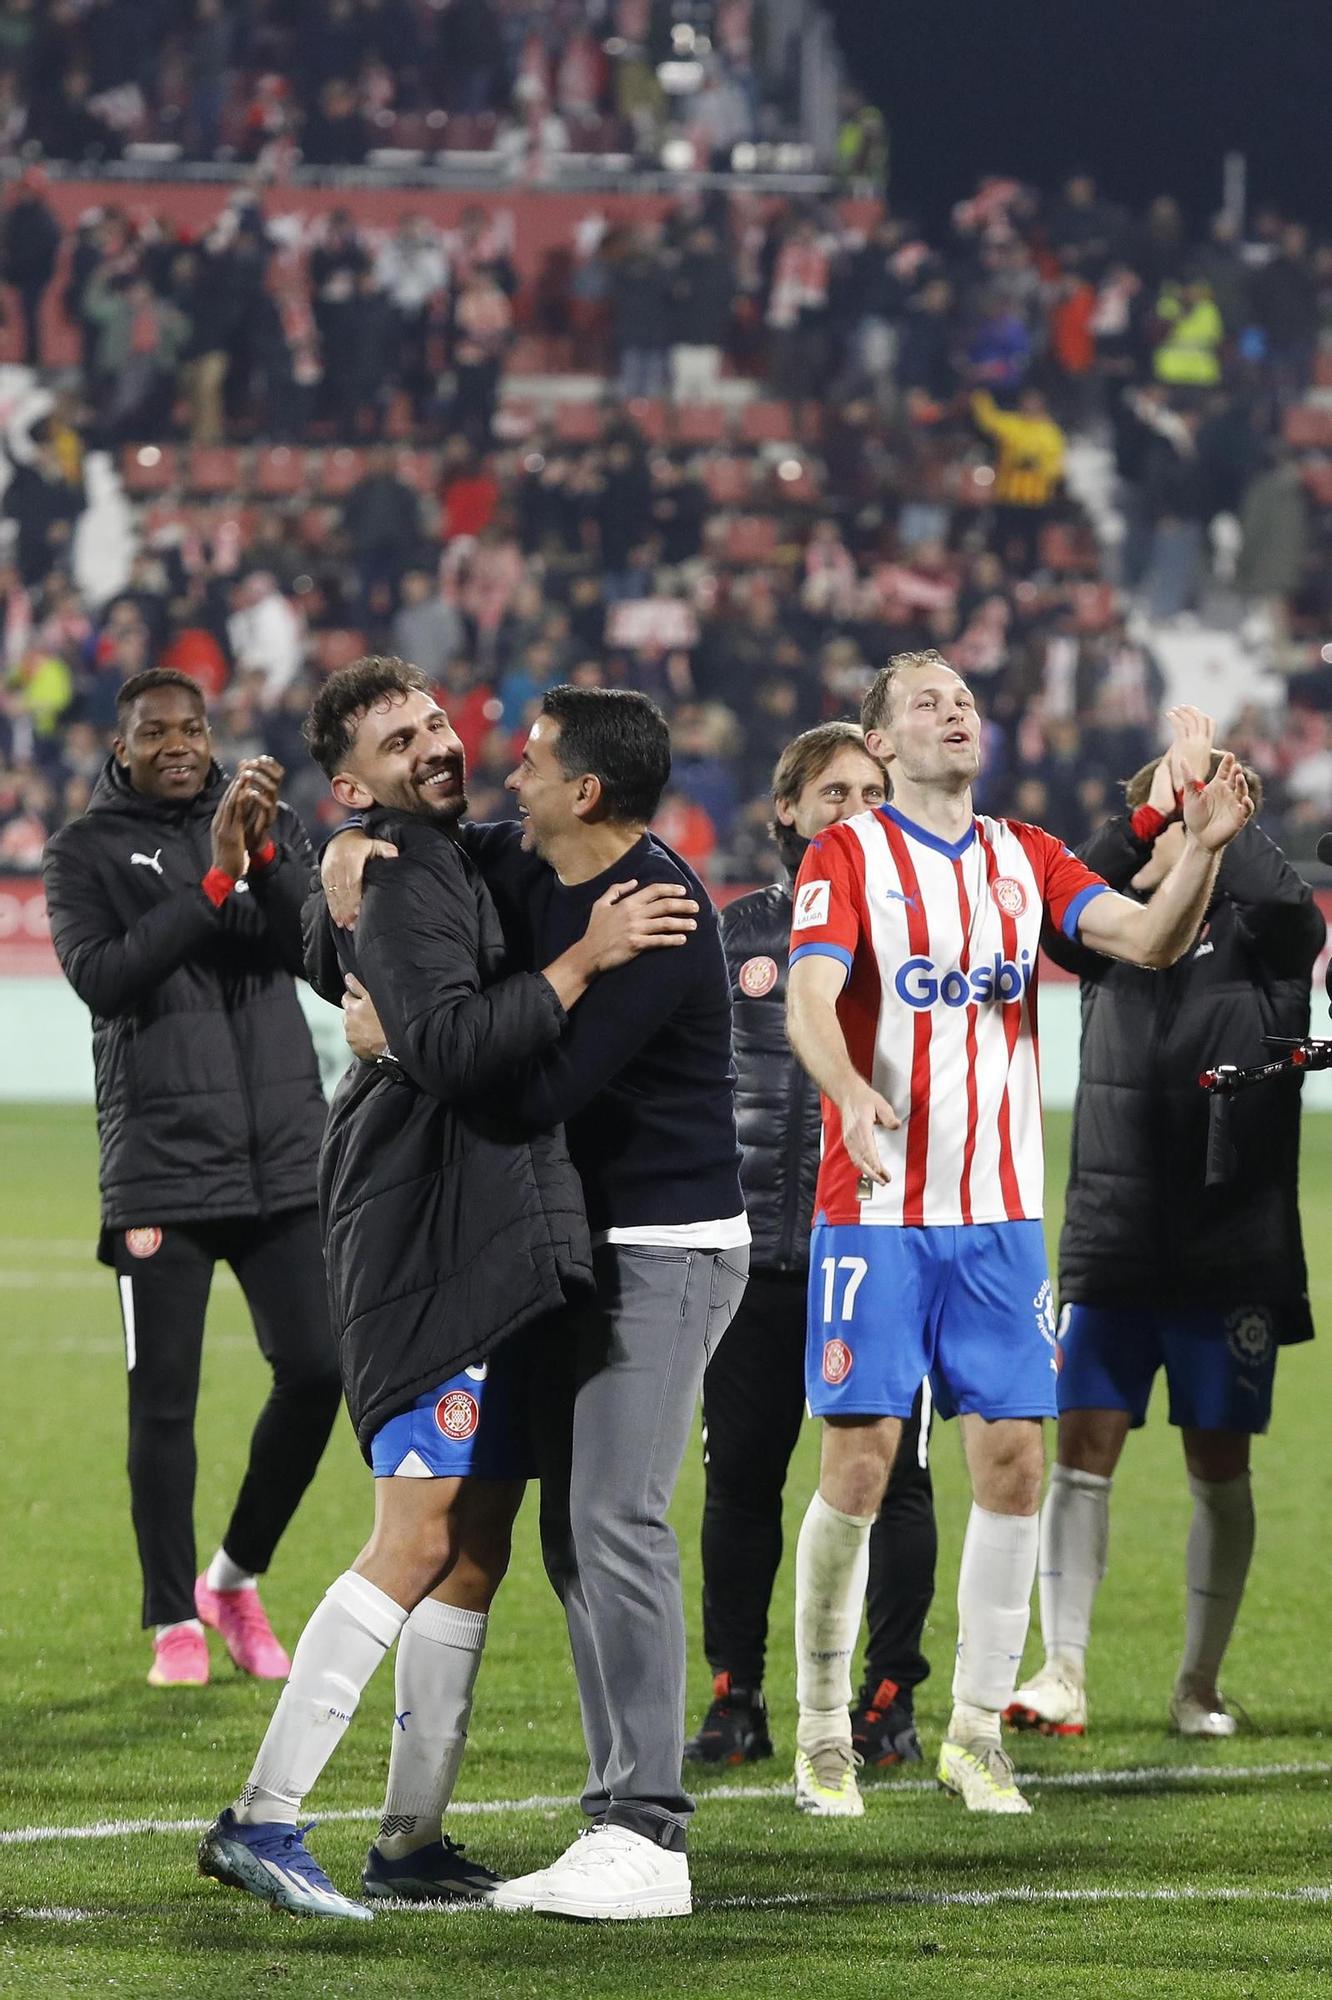 Totes les imatges del Girona-Atlético: una victòria apoteòsica